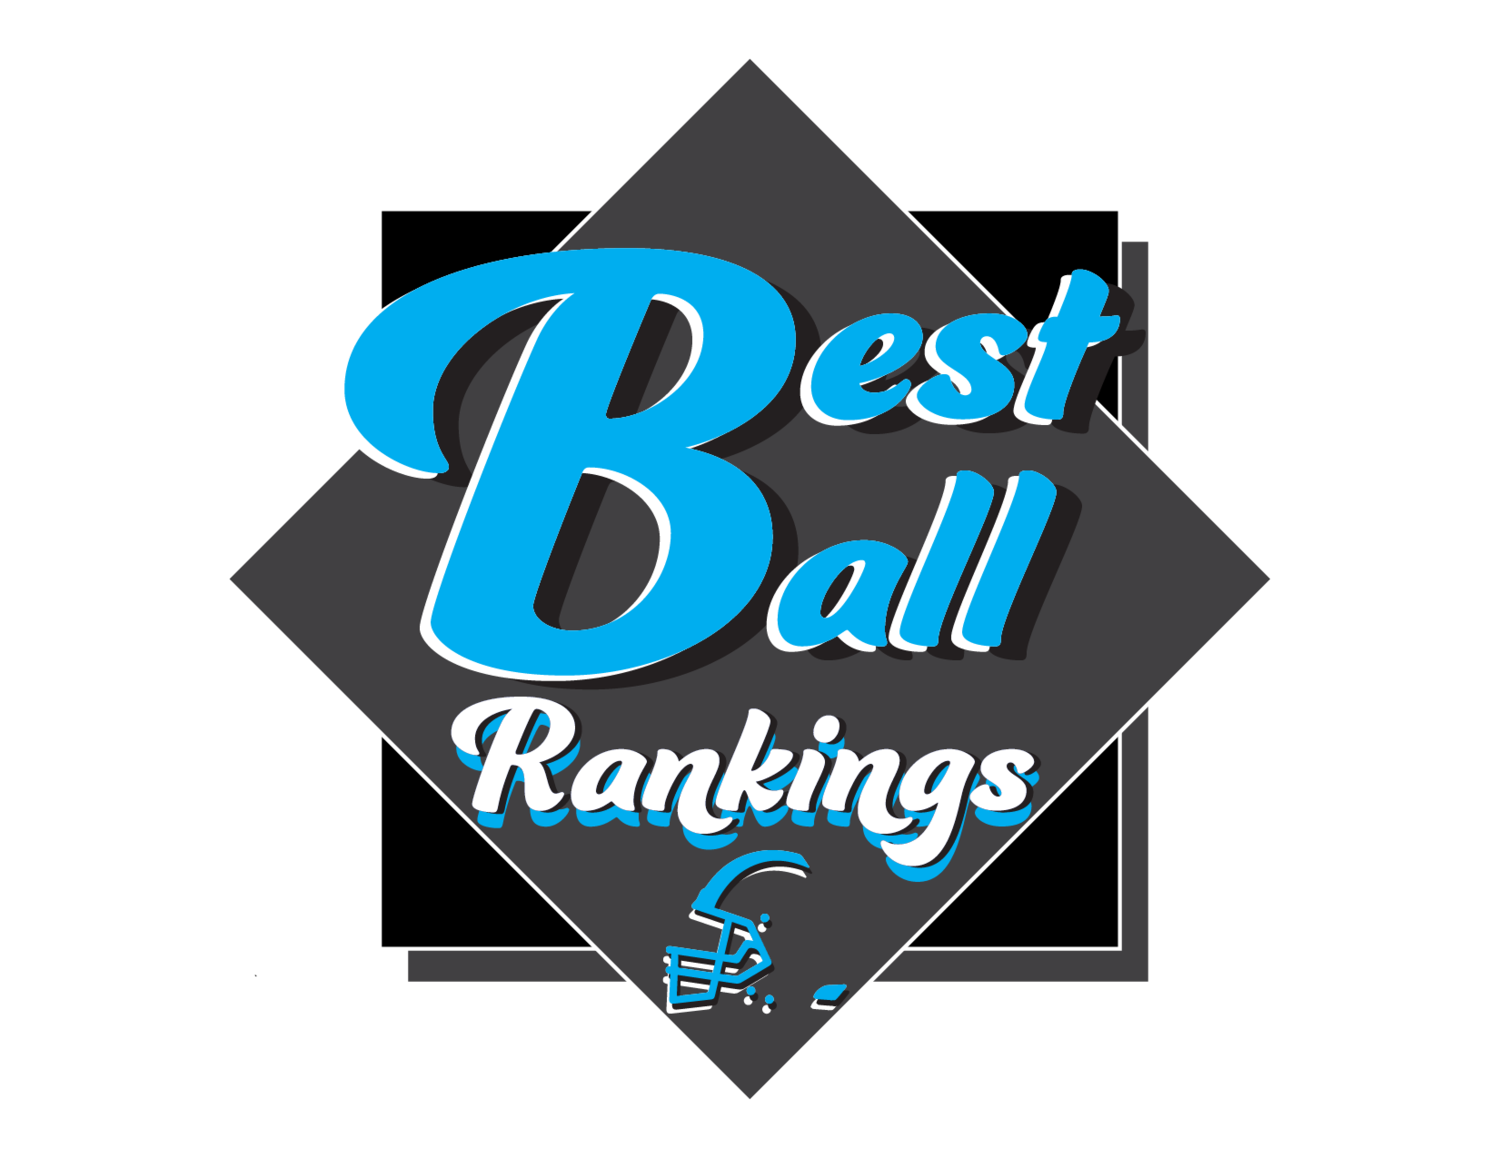 best ball rankings nfl